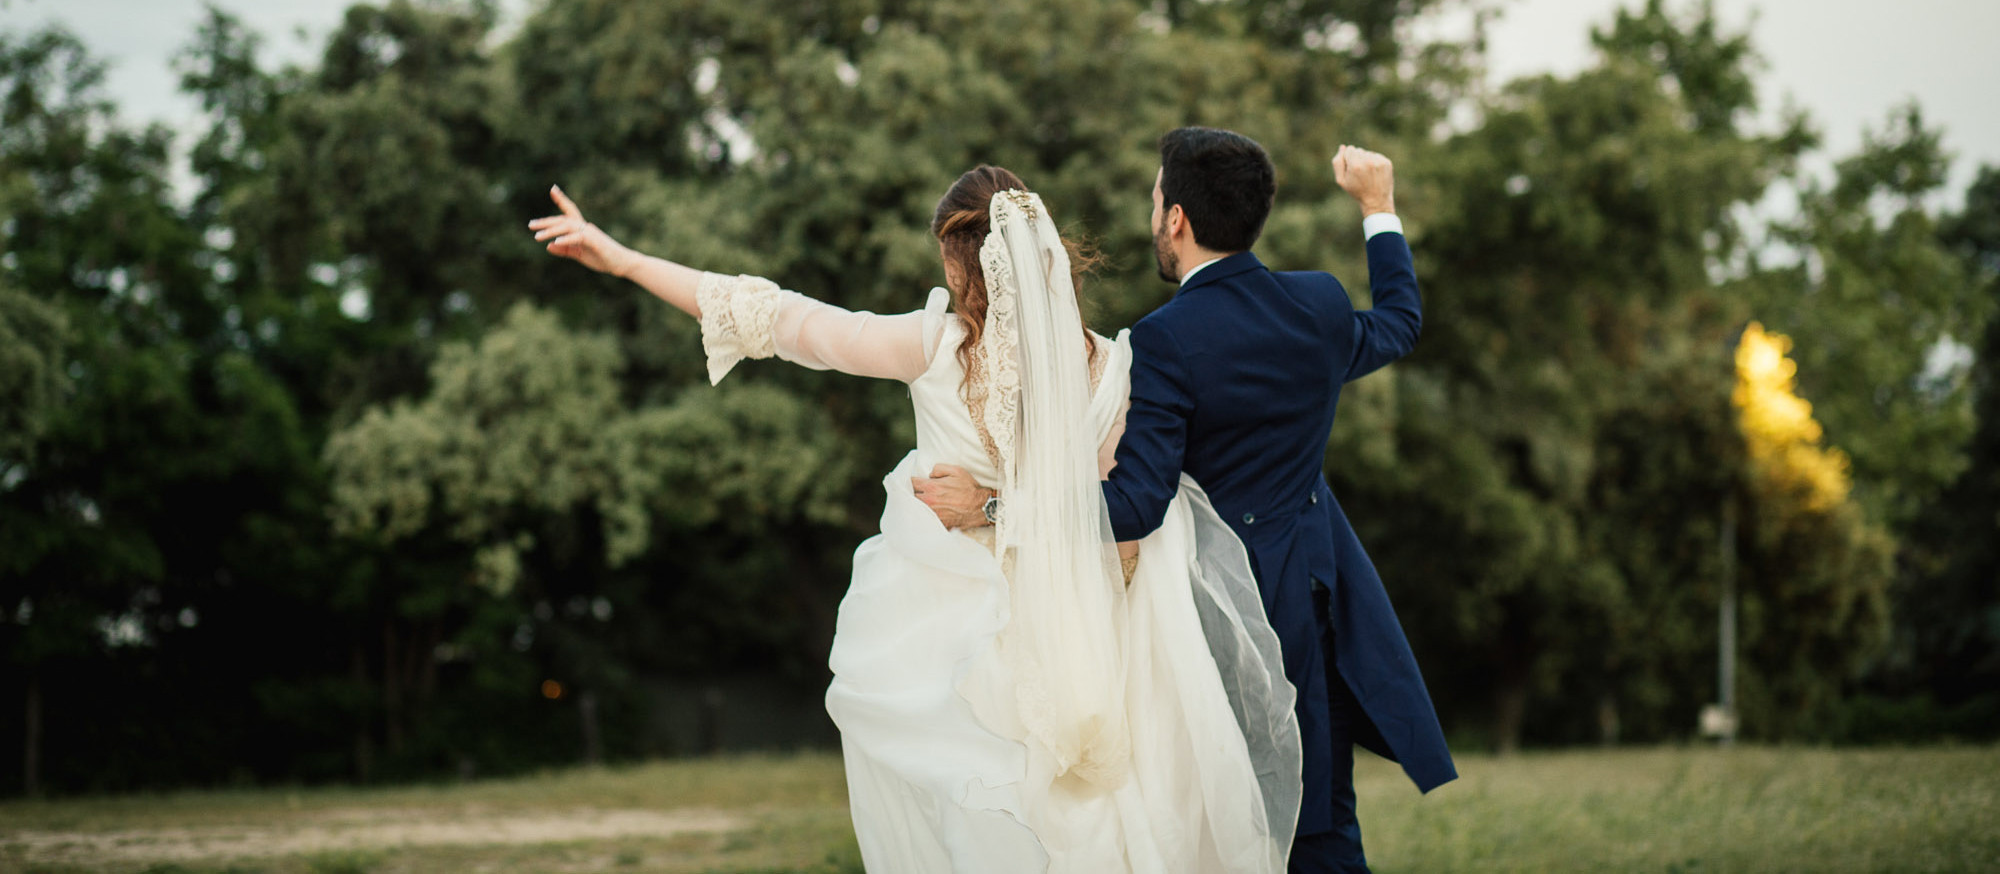 Llega la temporada de bodas, bautizos y comuniones: este vestido